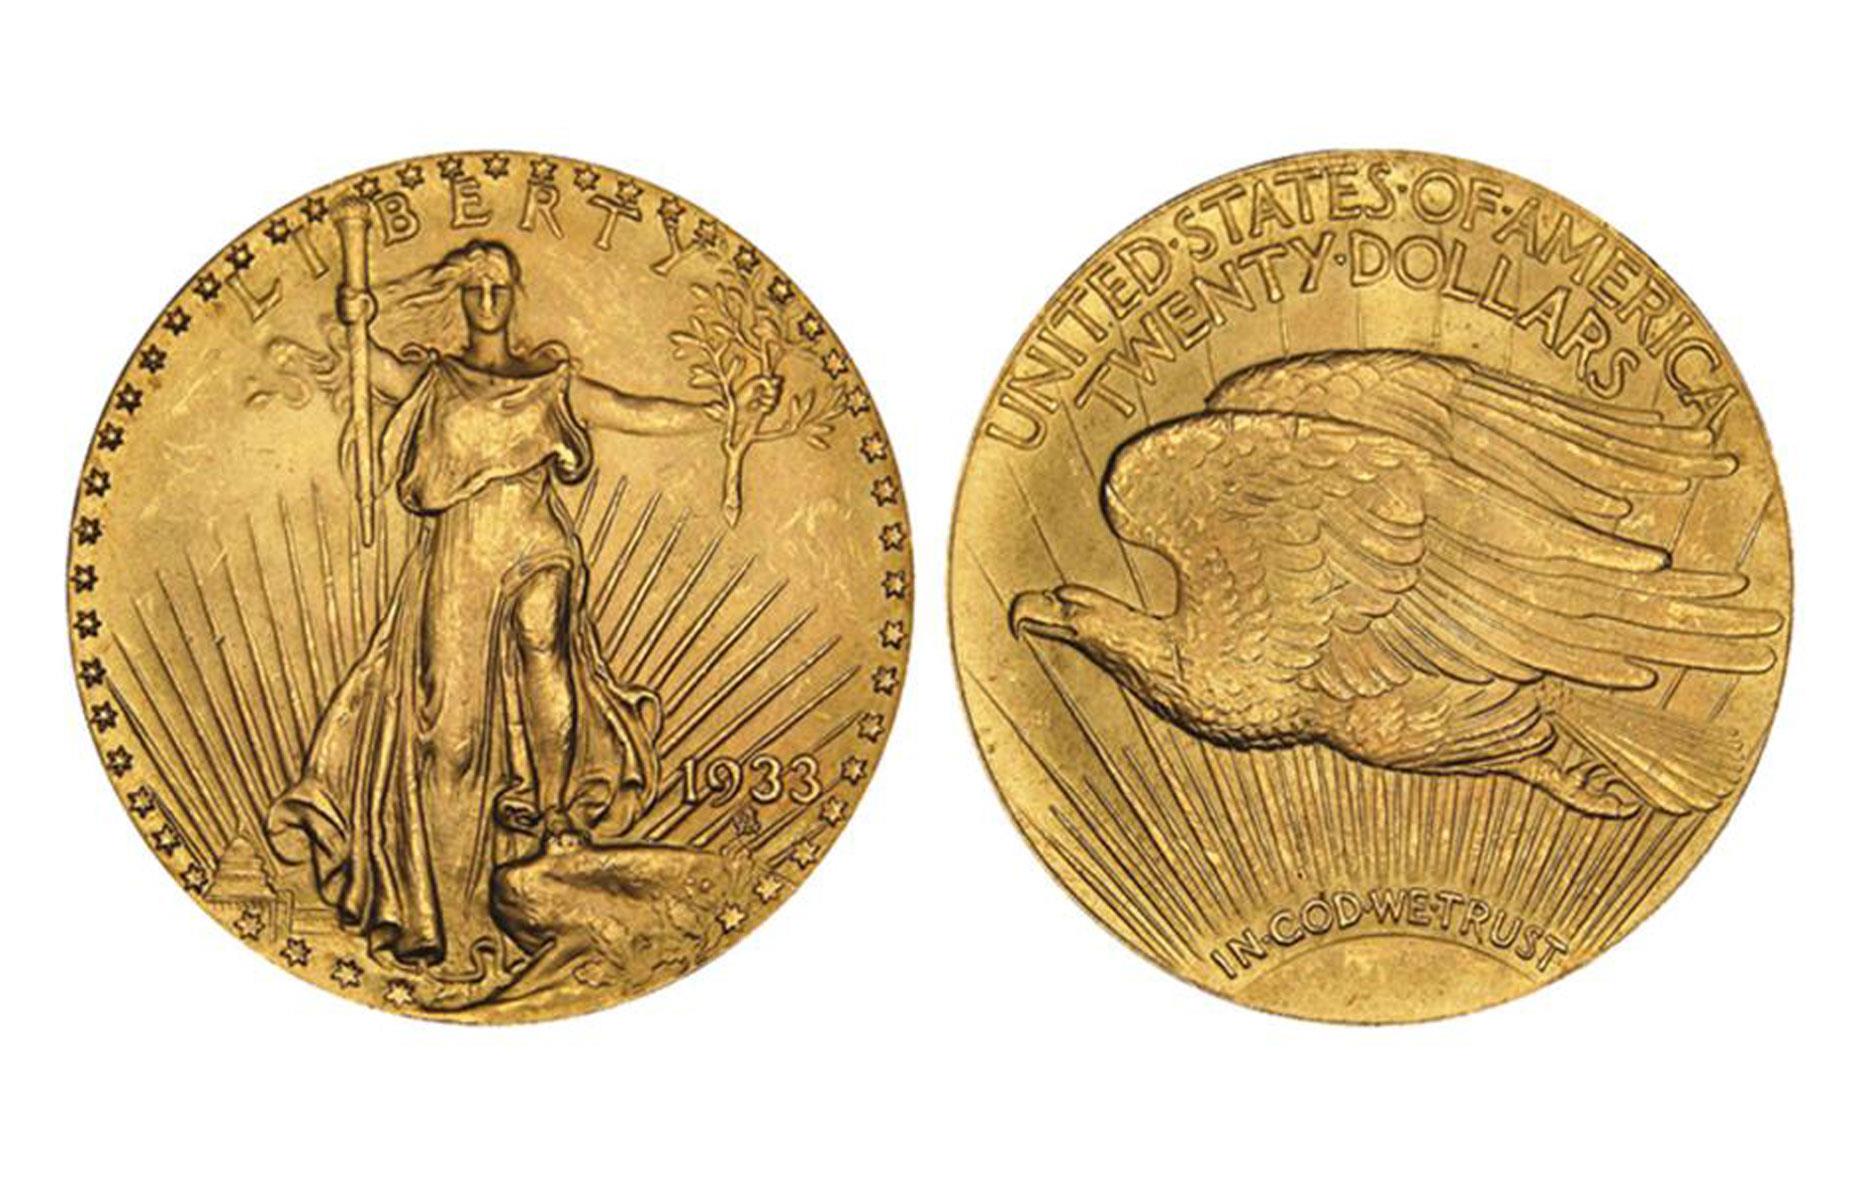 1933 Double Eagle $20 coin: $18.9 million